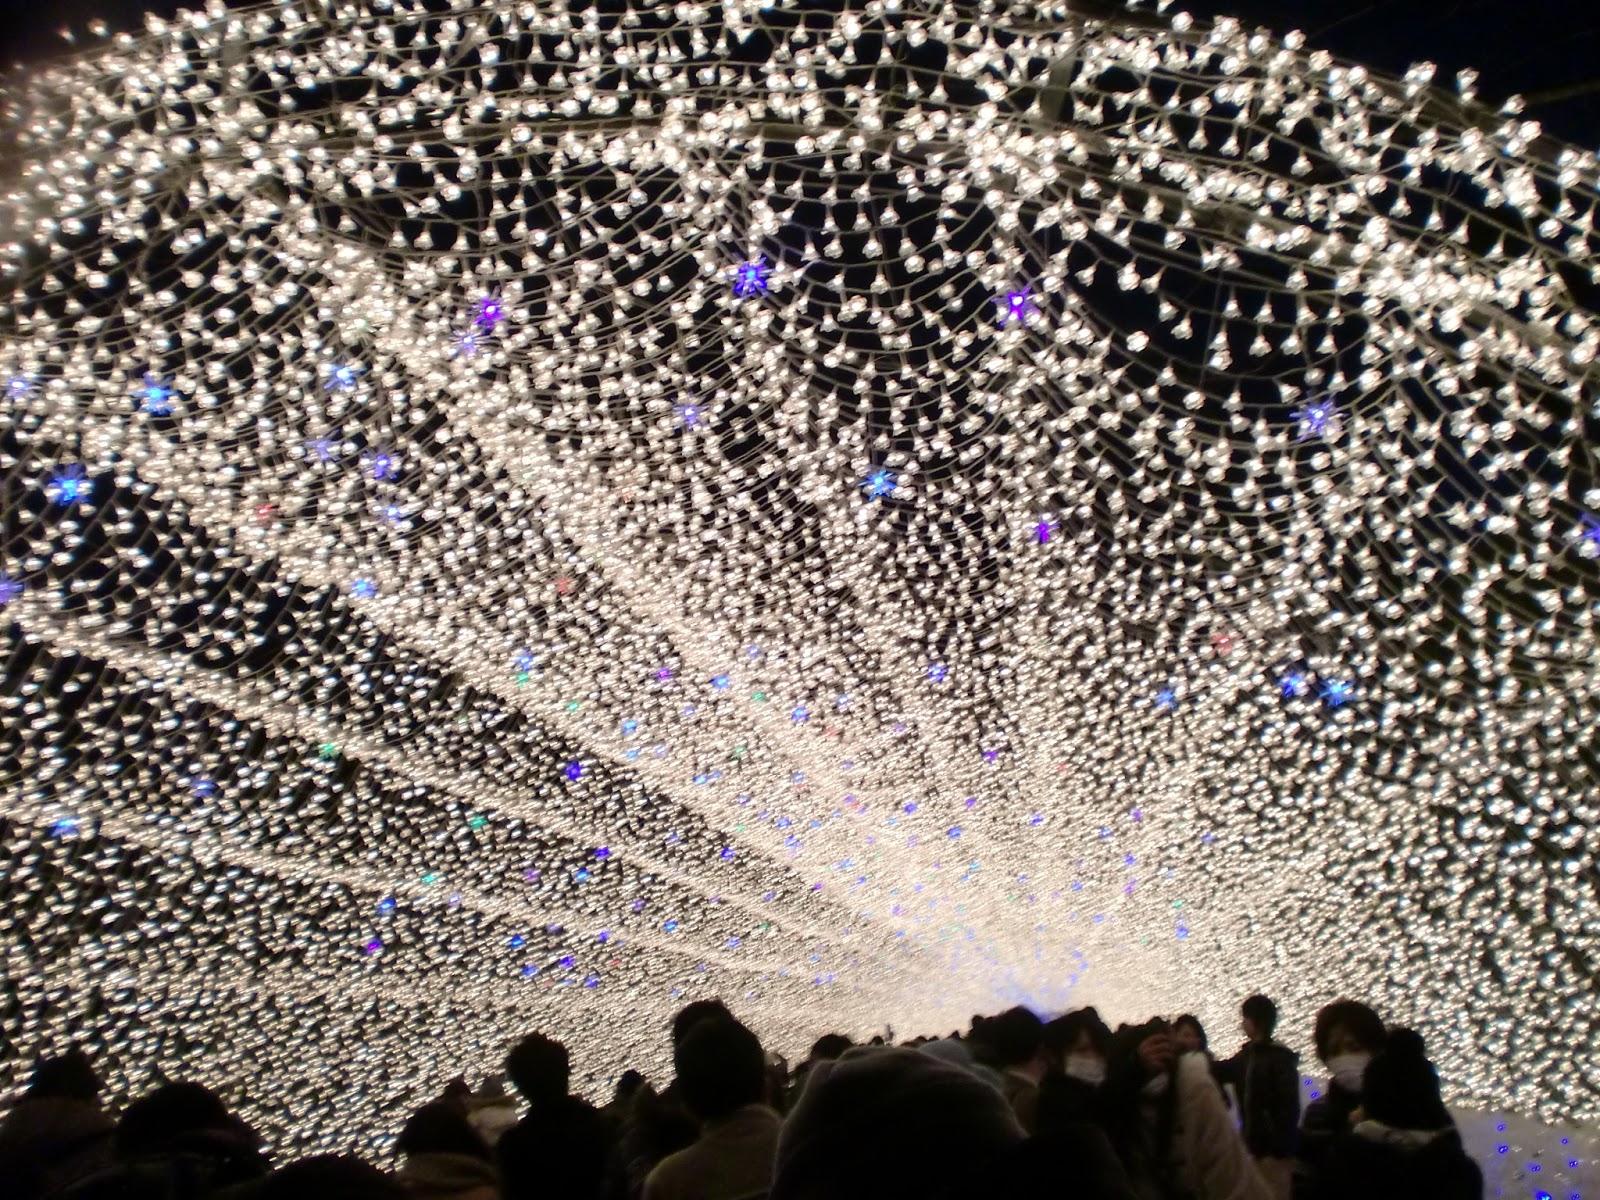 Iluminación navideña del parque Nabana no Sato/なばなの里　イルミネーション